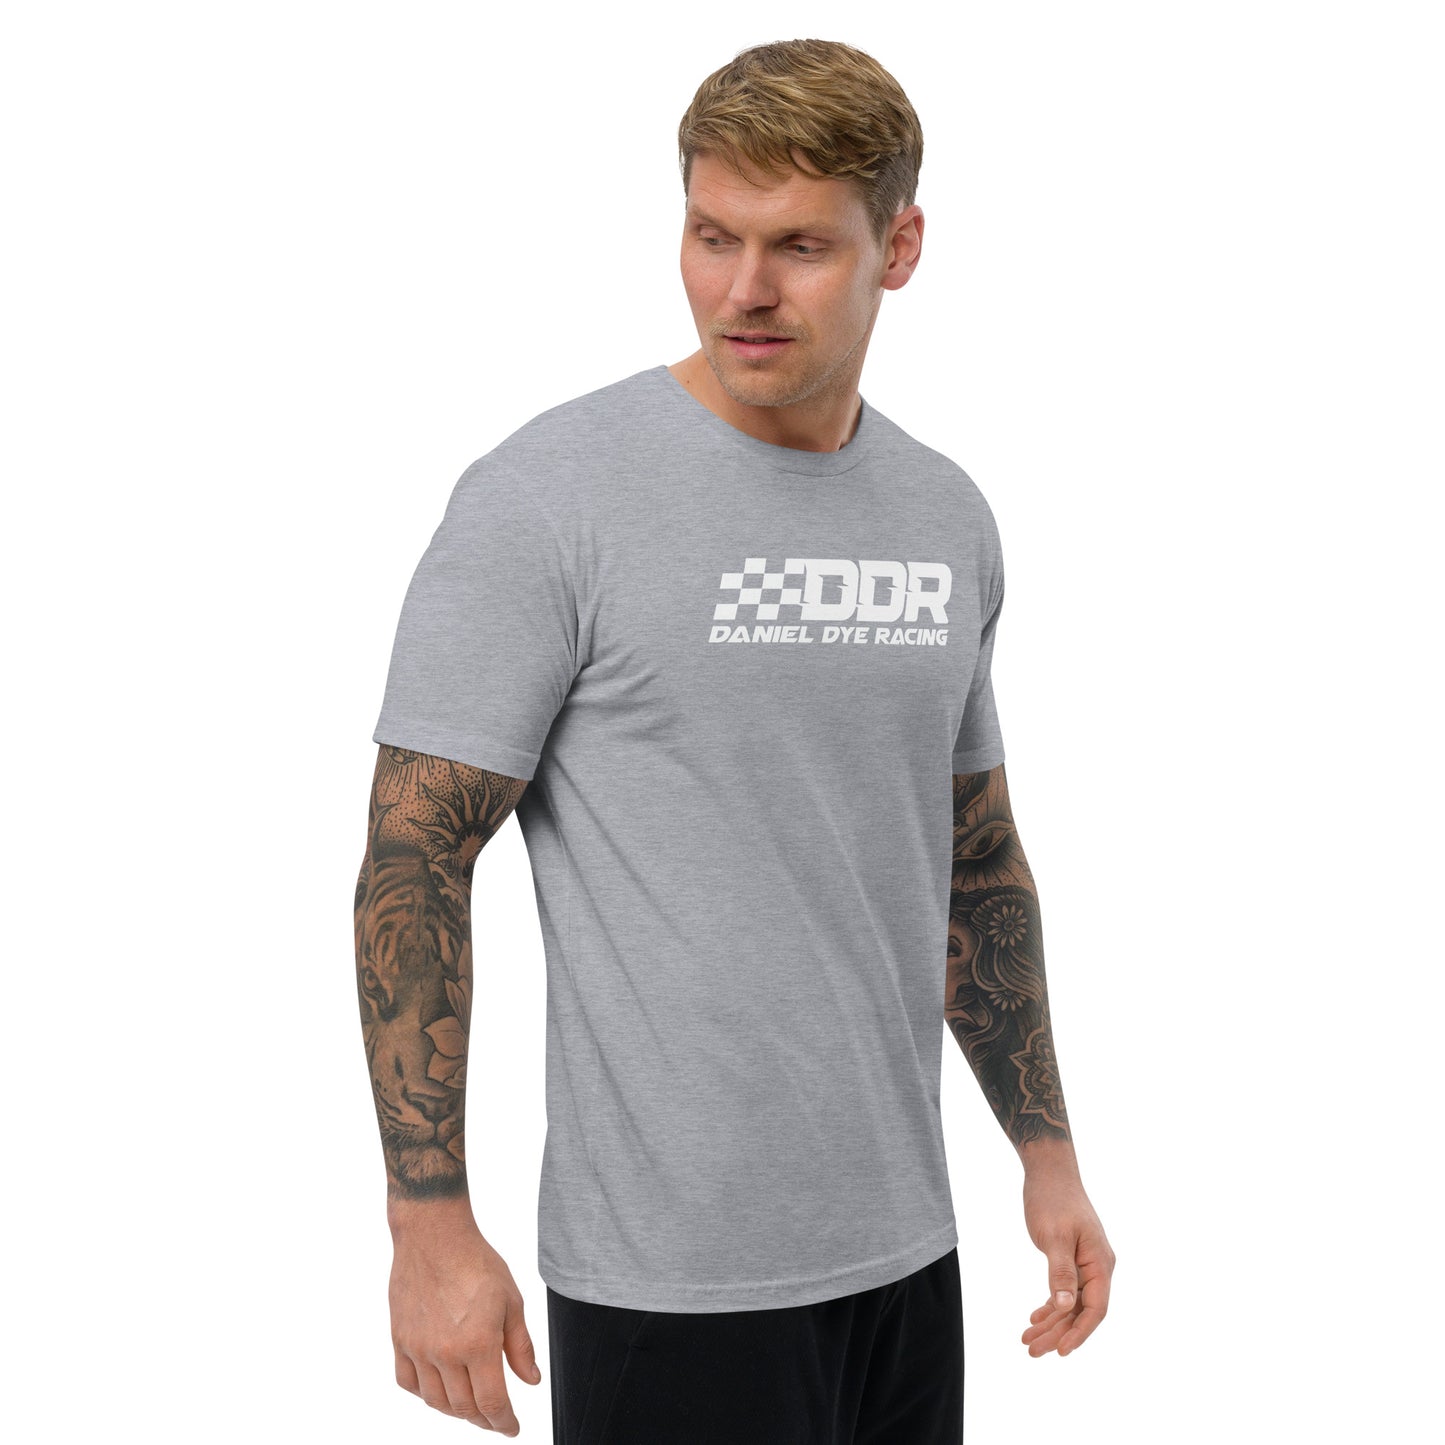 Short Sleeve T-shirt - [Daniel Dye Racing Shop]